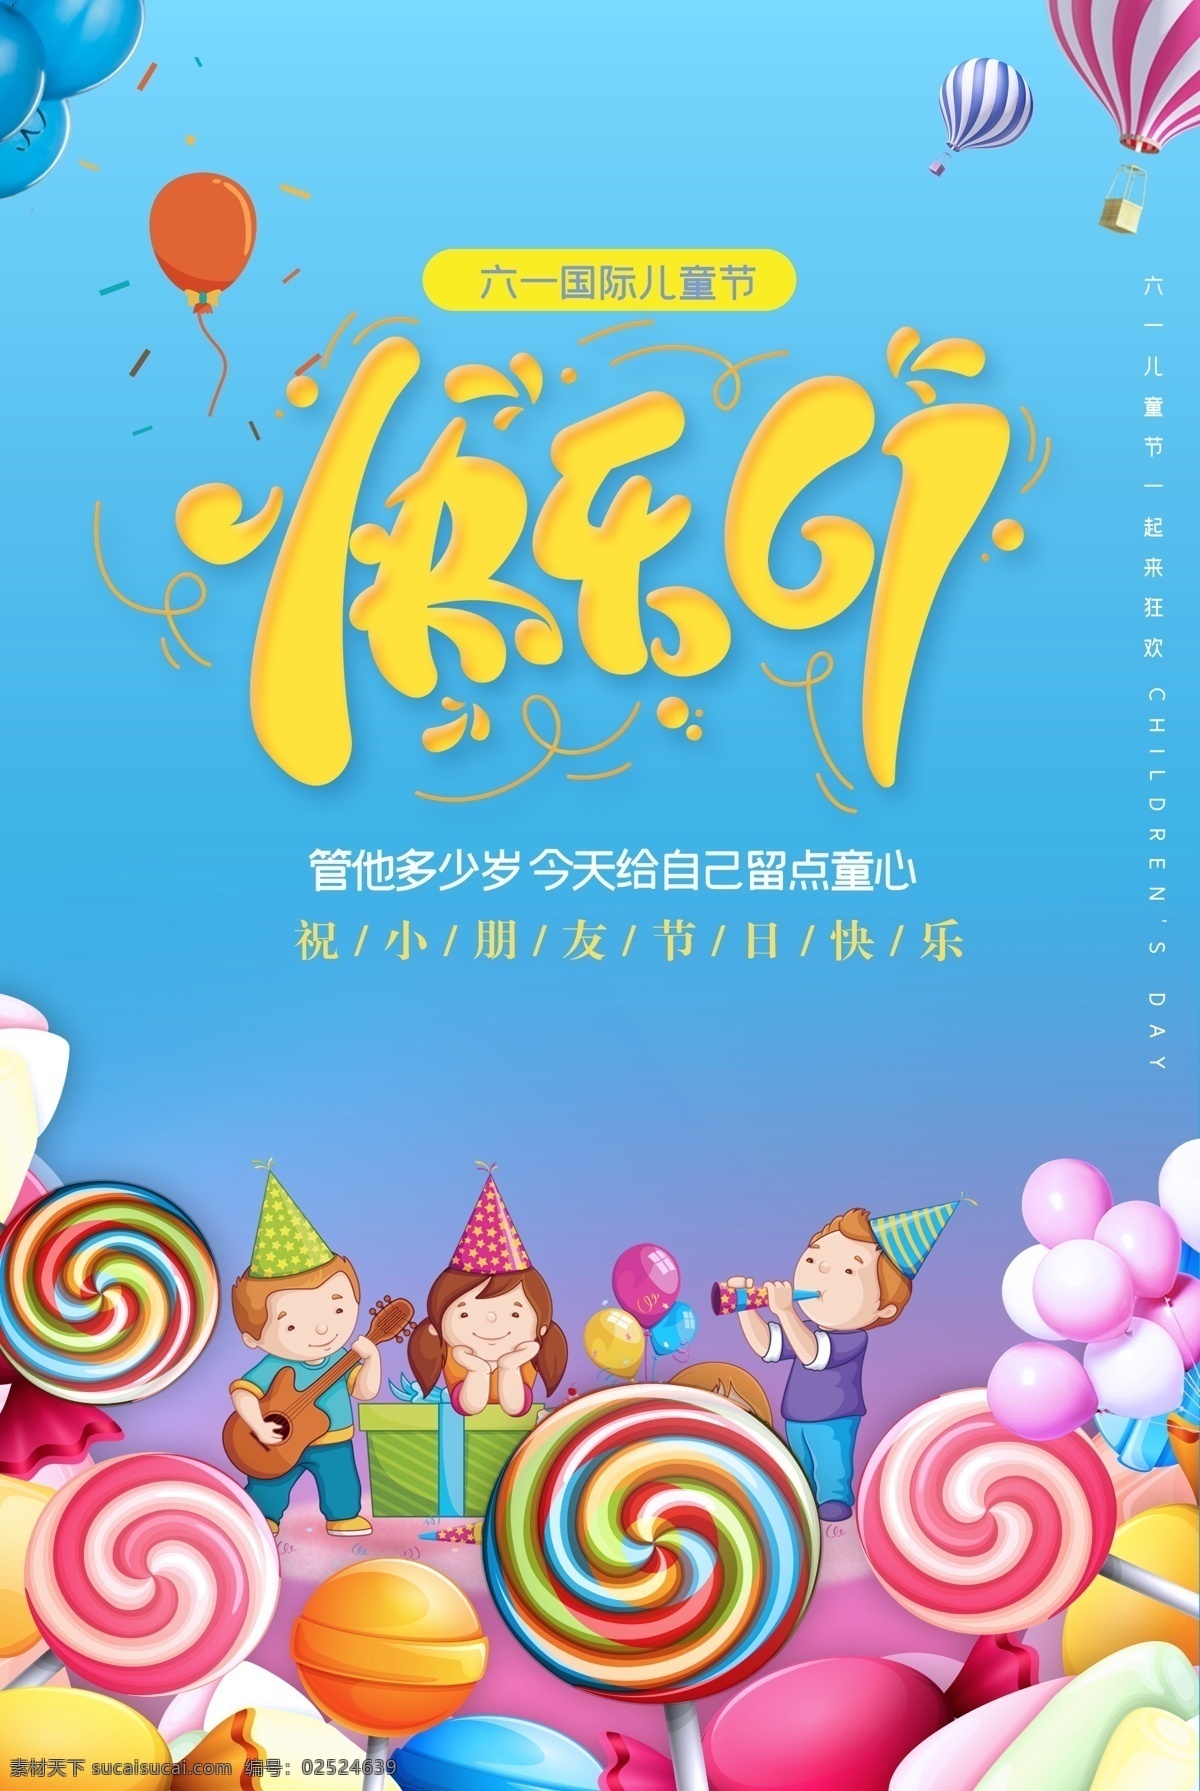 快乐 61 儿童节 棒棒糖 彩虹糖 城堡 气球 粉红气球